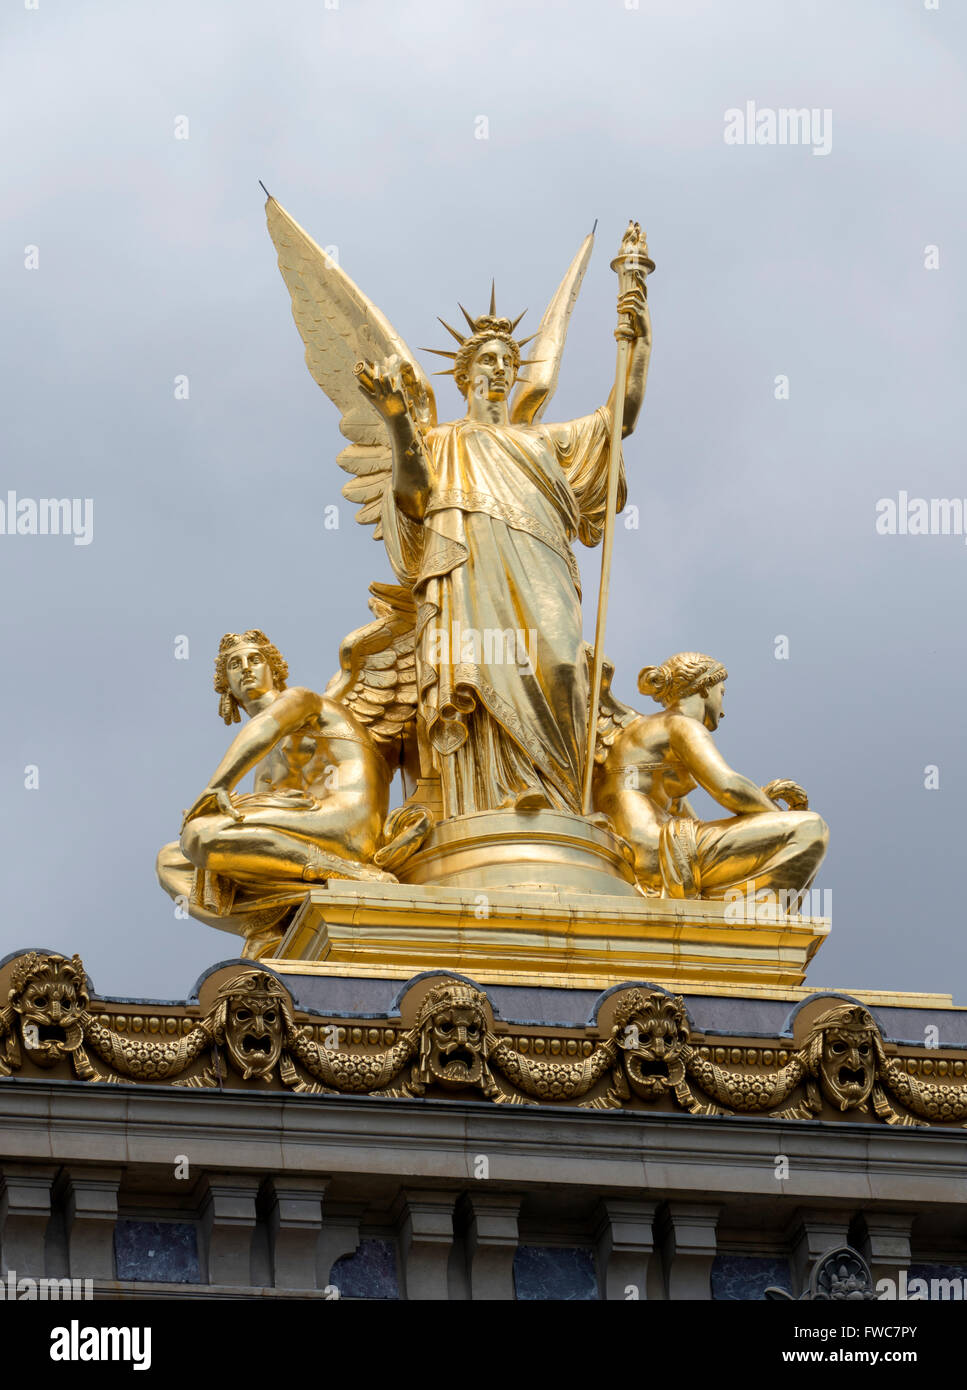 Gumery Poetry statue at the Opéra National de Paris Garnier, Paris, France. Stock Photo